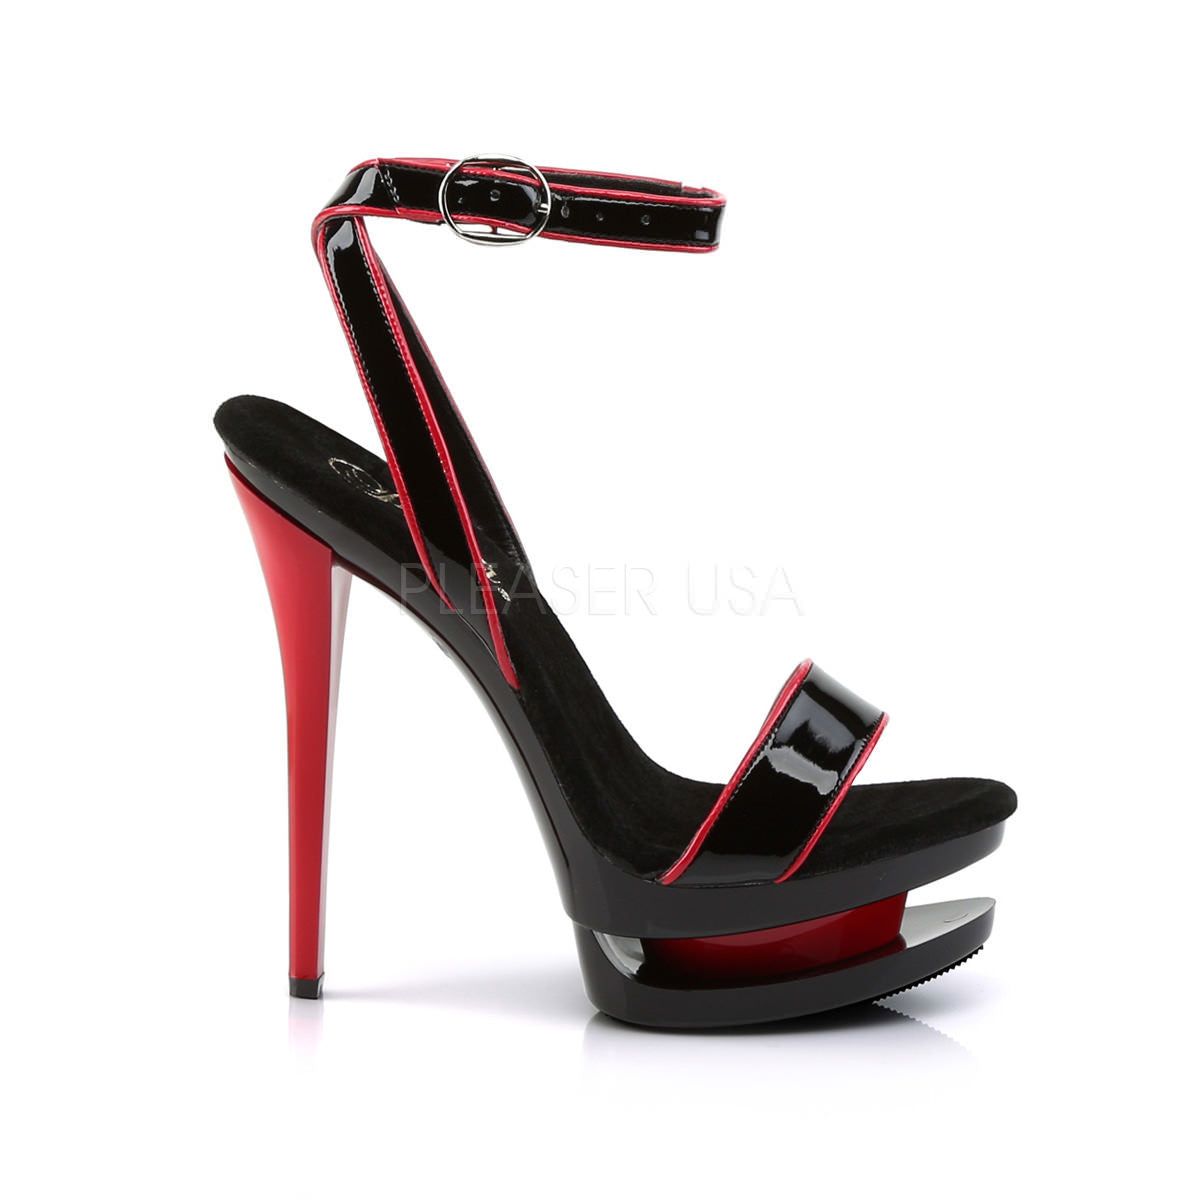 PLEASER BLONDIE-631-2 Black Red Pat-Black-Red Stiletto Sandals